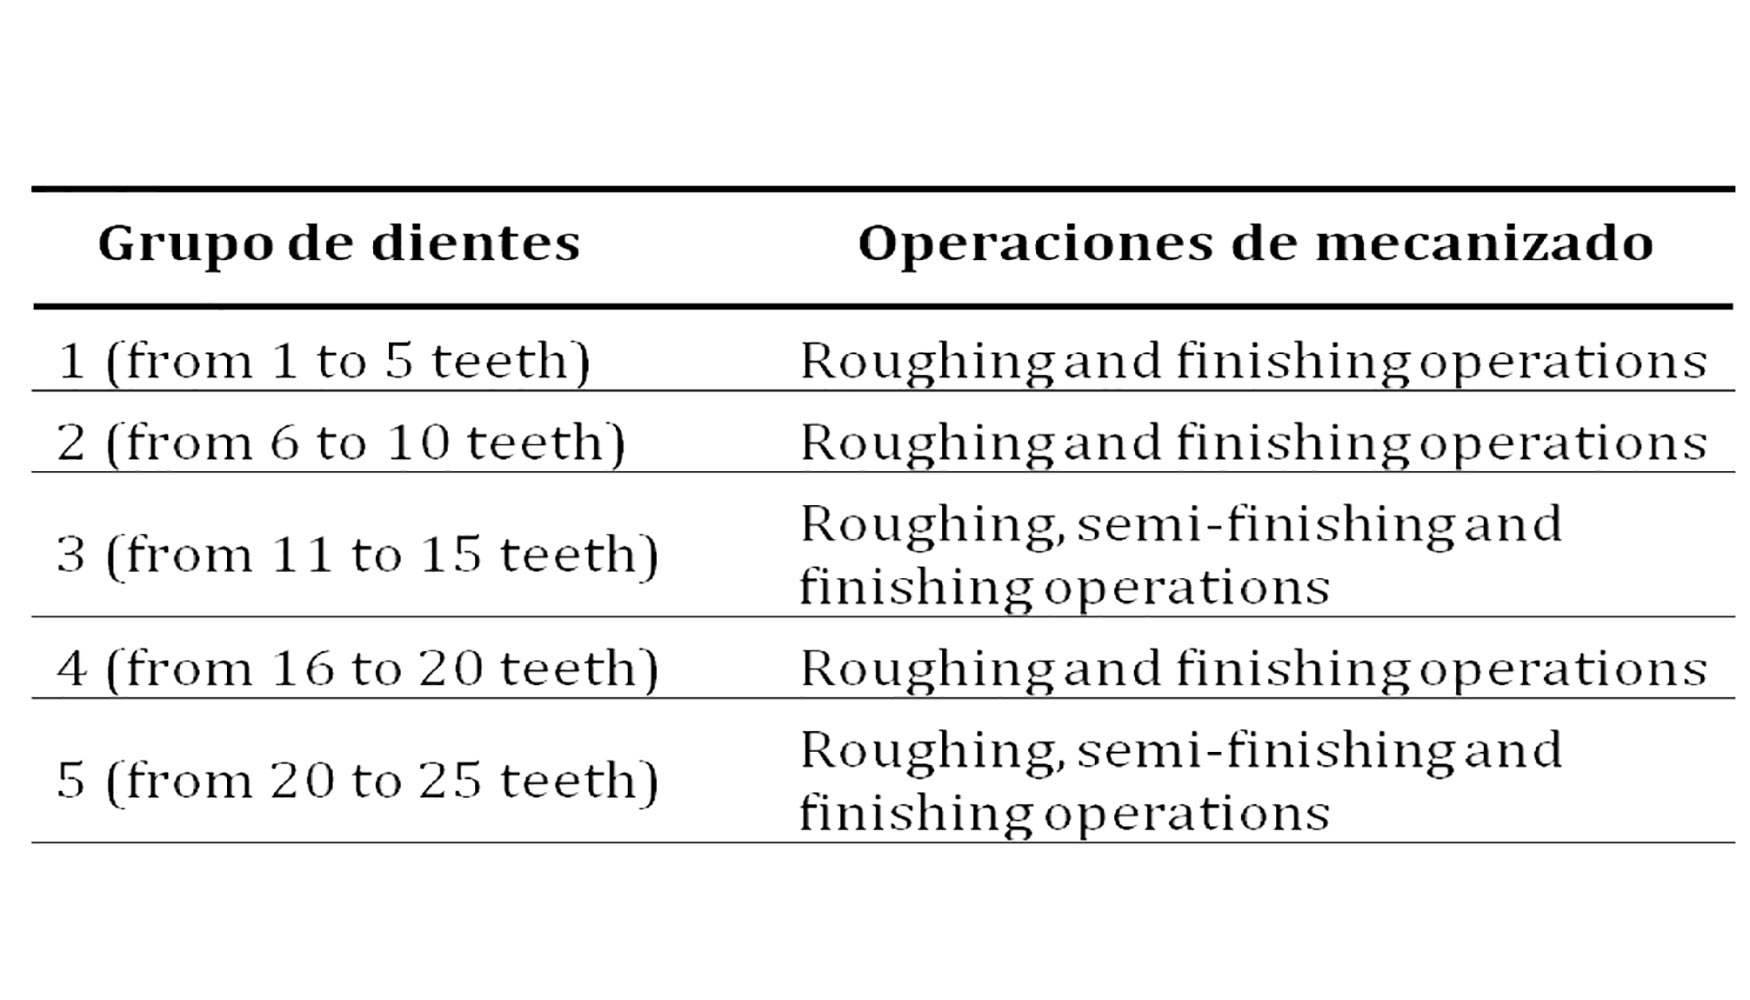 Tabla 2. Diferentes operaciones de mecanizado por grupo de dientes